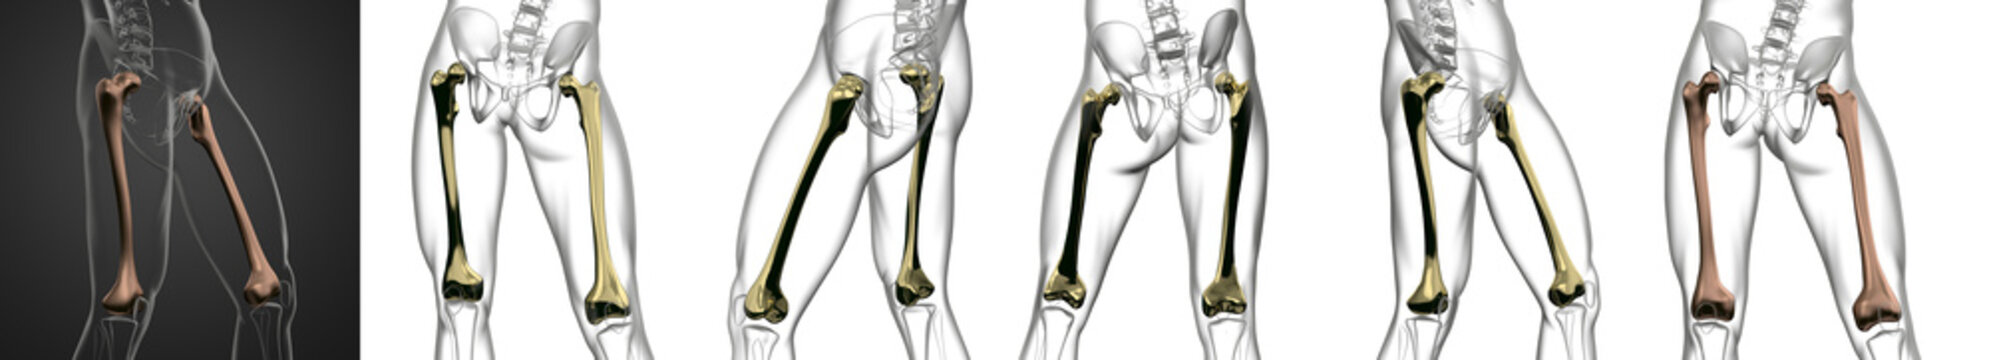 3D rendering medical illustration of the femur bone